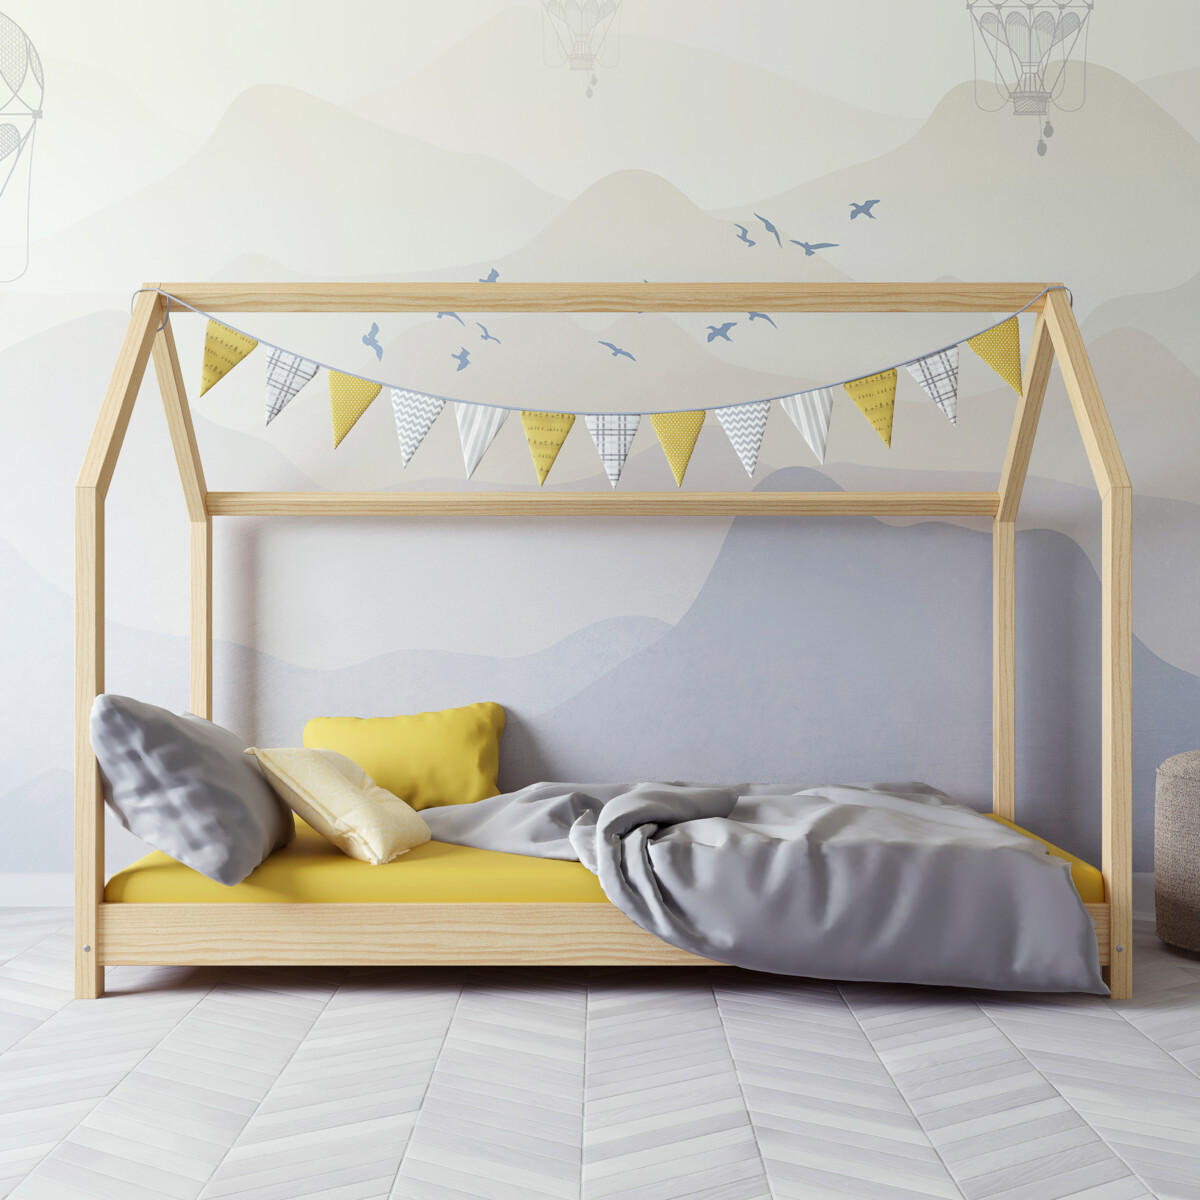 Dětská postel / domeček Bella 80 x 160 cm